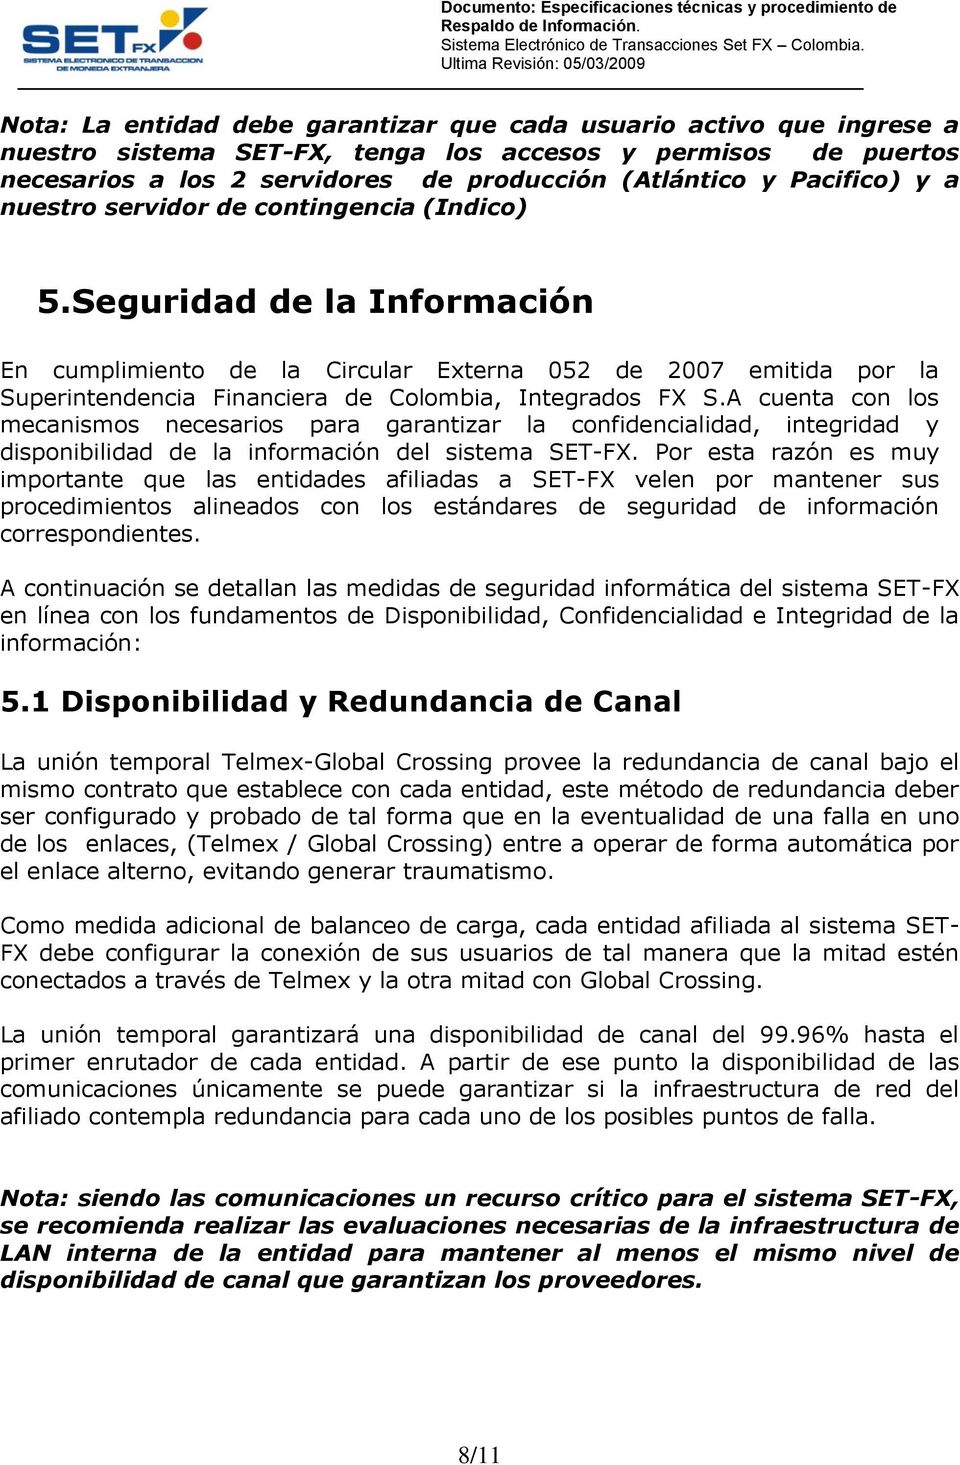 Seguridad de la Información En cumplimiento de la Circular Externa 052 de 2007 emitida por la Superintendencia Financiera de Colombia, Integrados FX S.